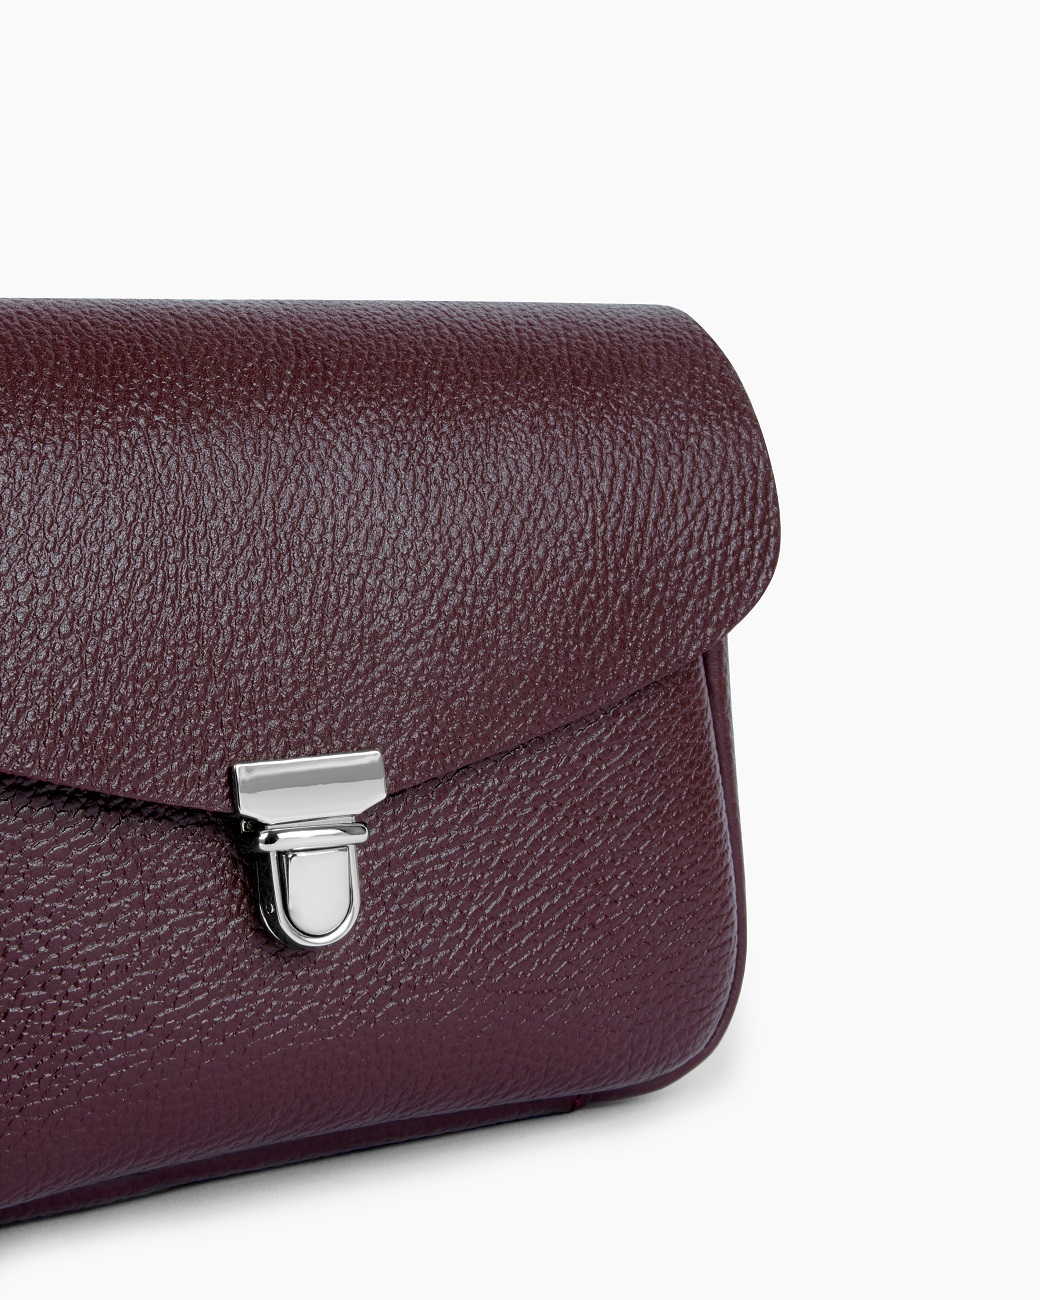 Женская сумка через плечо из натуральной кожи бордовая A001 burgundy grain